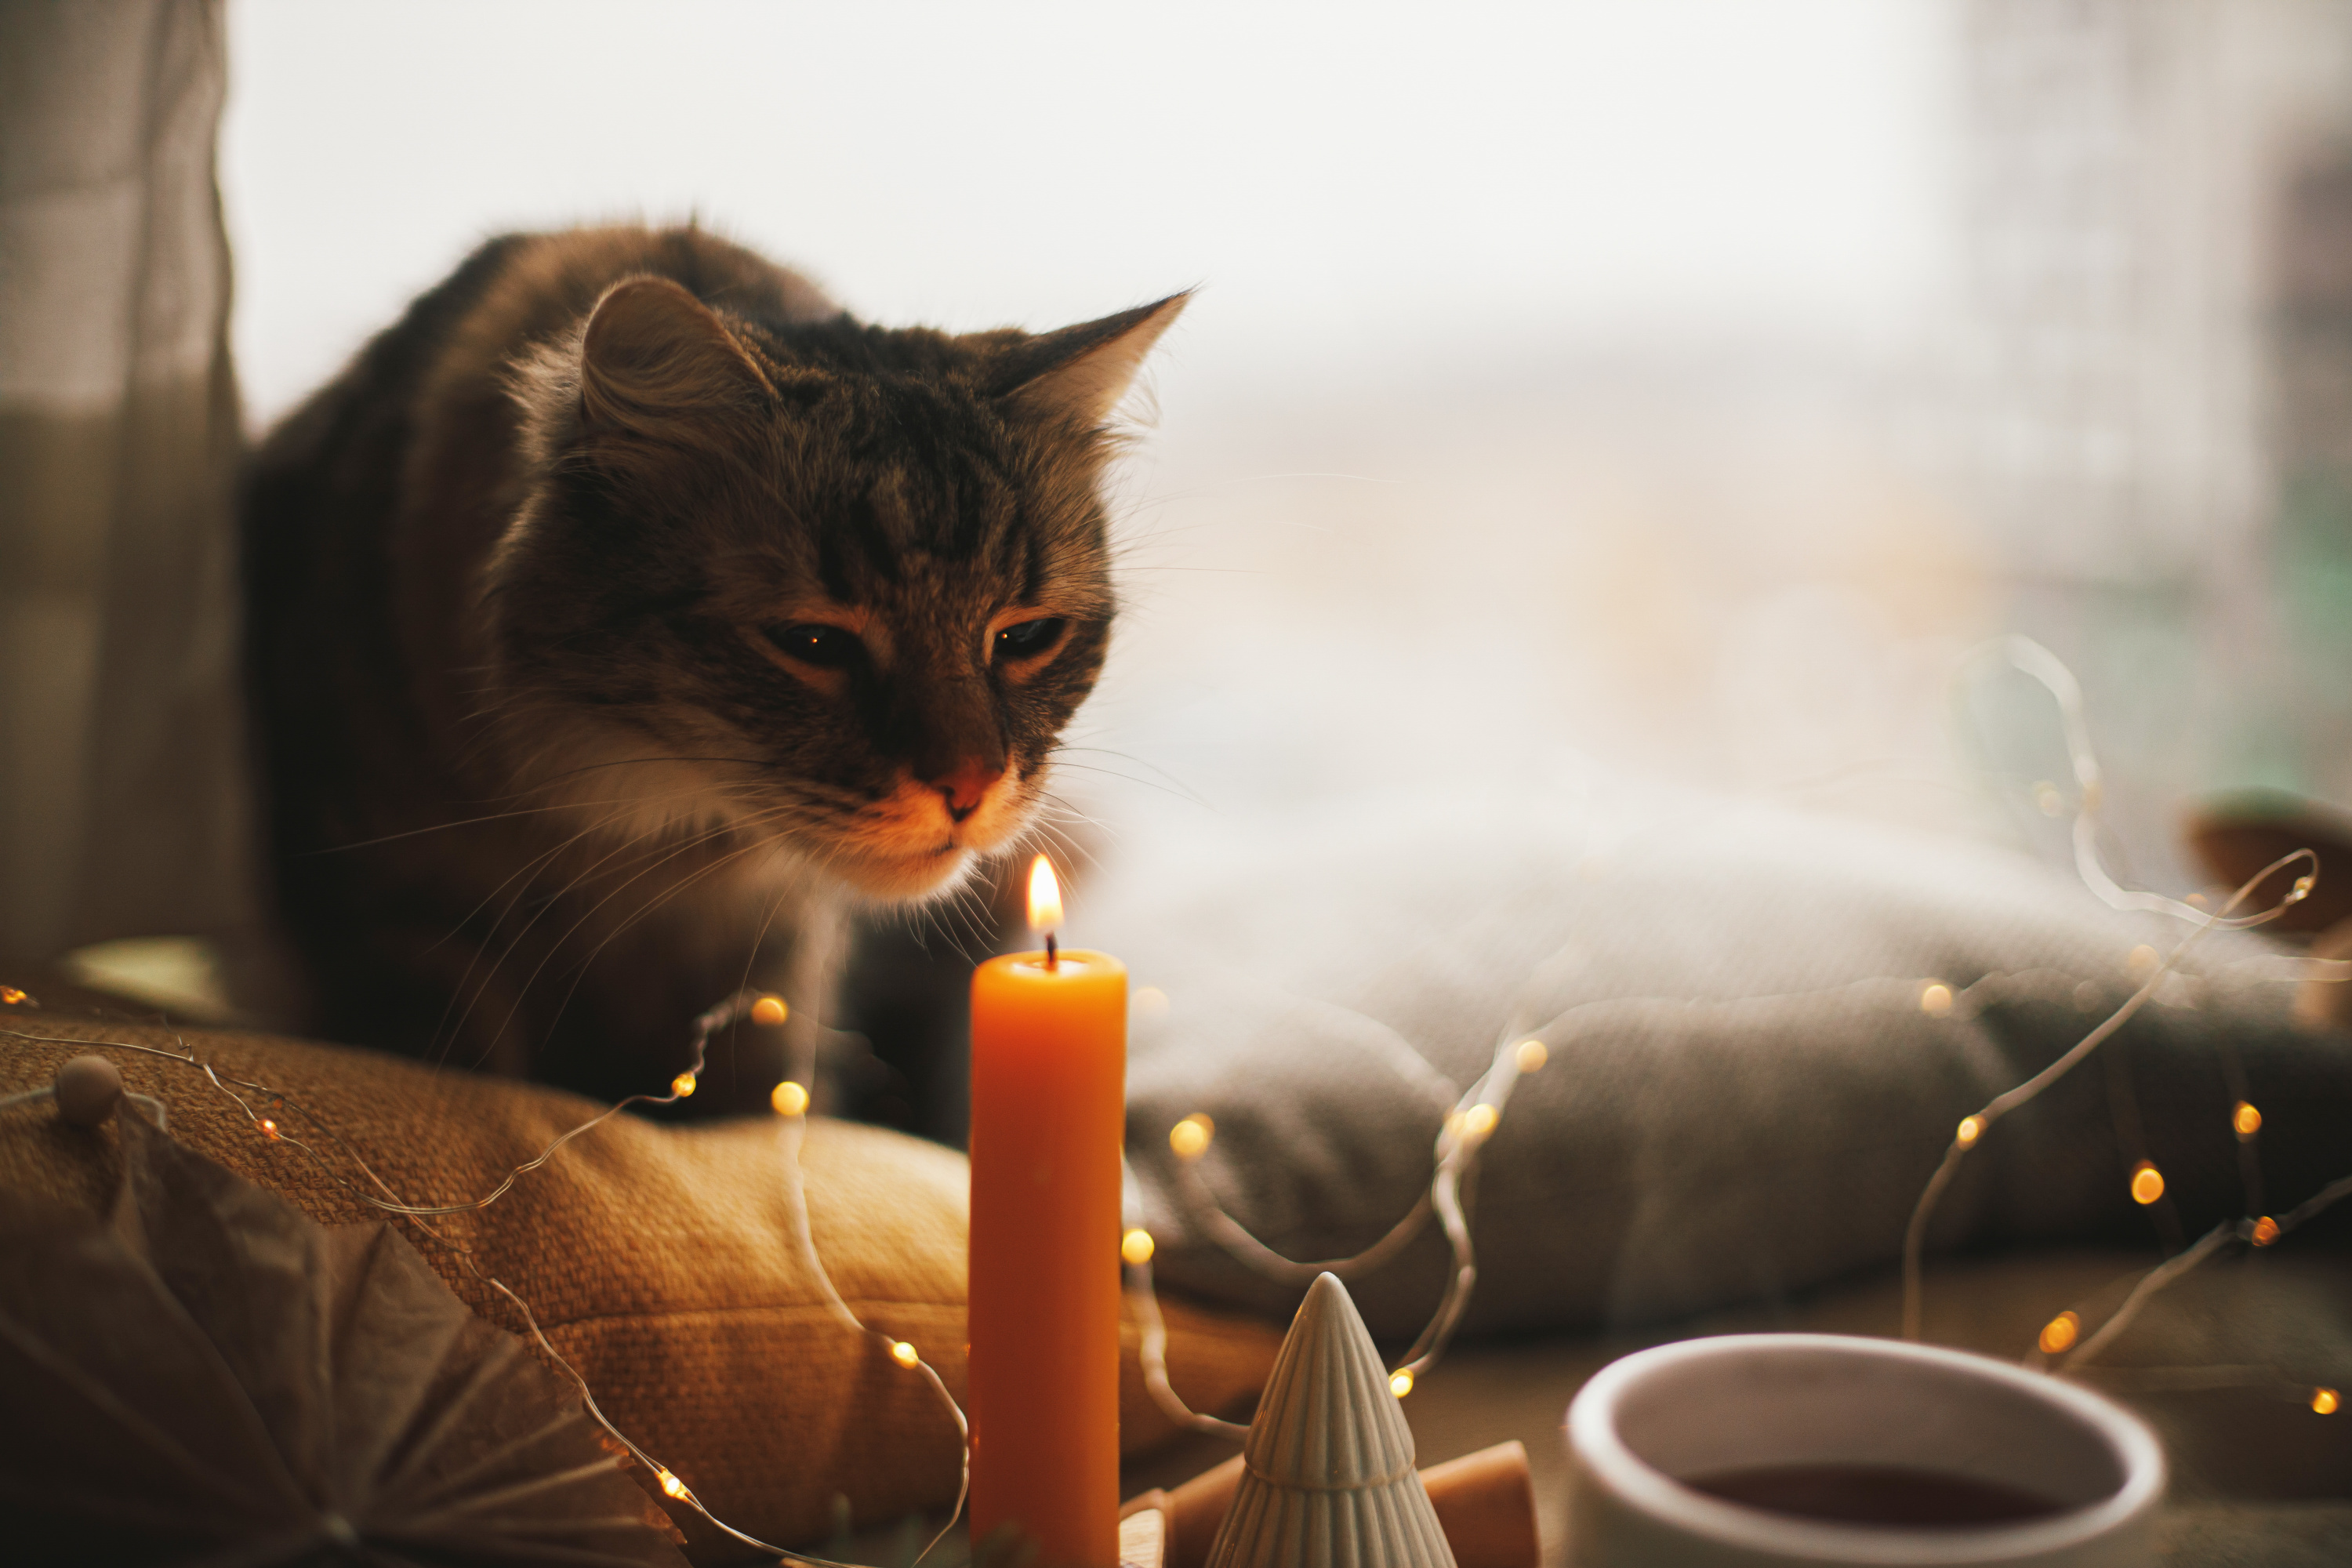 Les bougies sont-elles dangereuses pour nos animaux domestiques ?